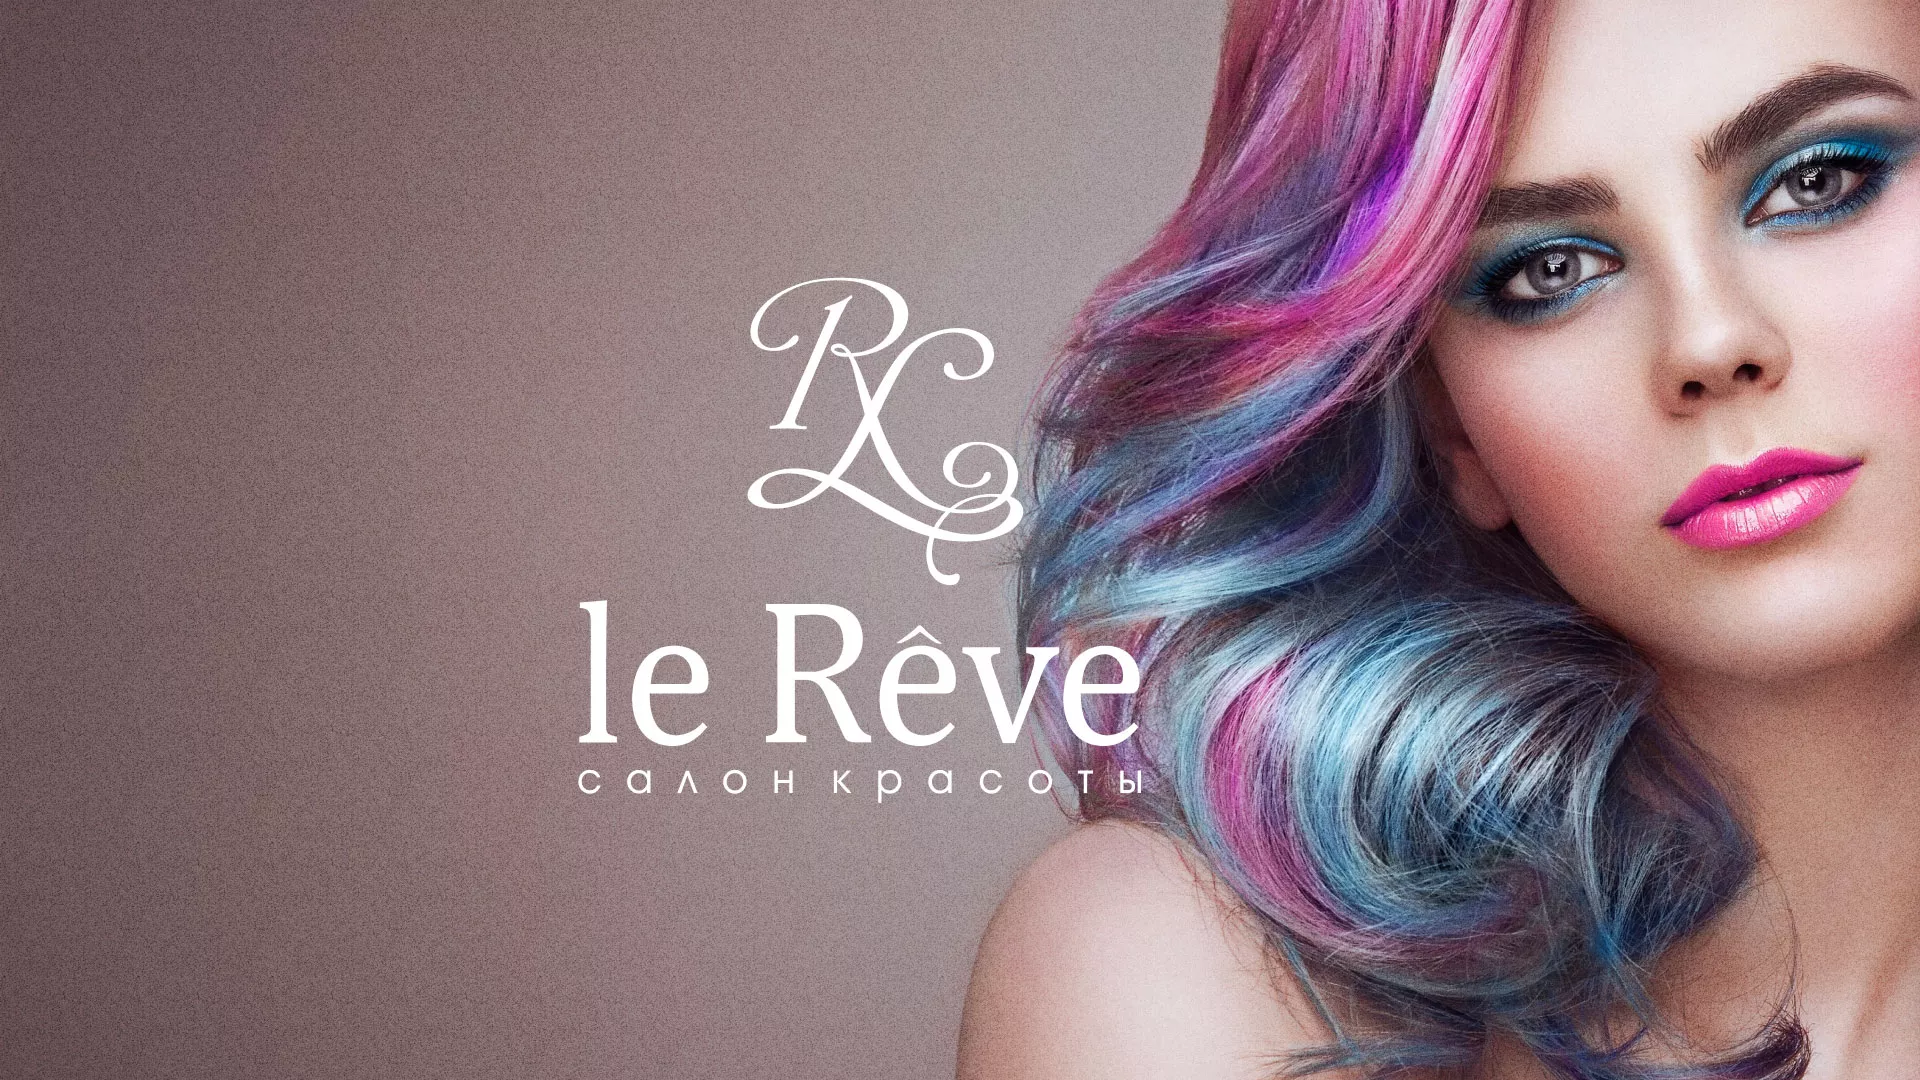 Создание сайта для салона красоты «Le Reve» в Балаково